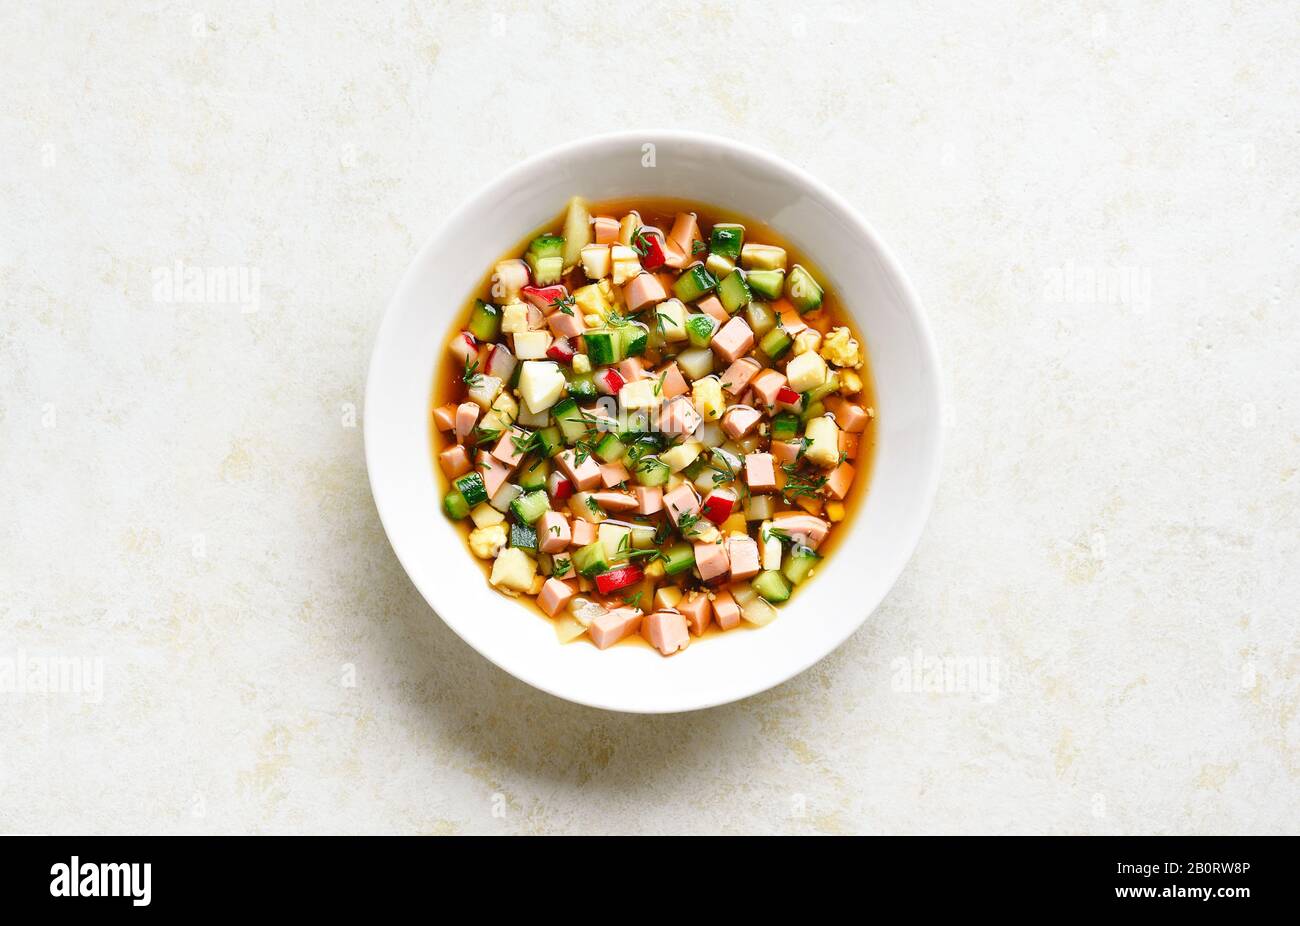 Okroschka-Suppe mit Wurst, Gemüse und Kvass über hellsteinem Hintergrund mit freiem Textraum. Traditionelle kalte russische Suppe. Draufsicht, flacher Lay Stockfoto